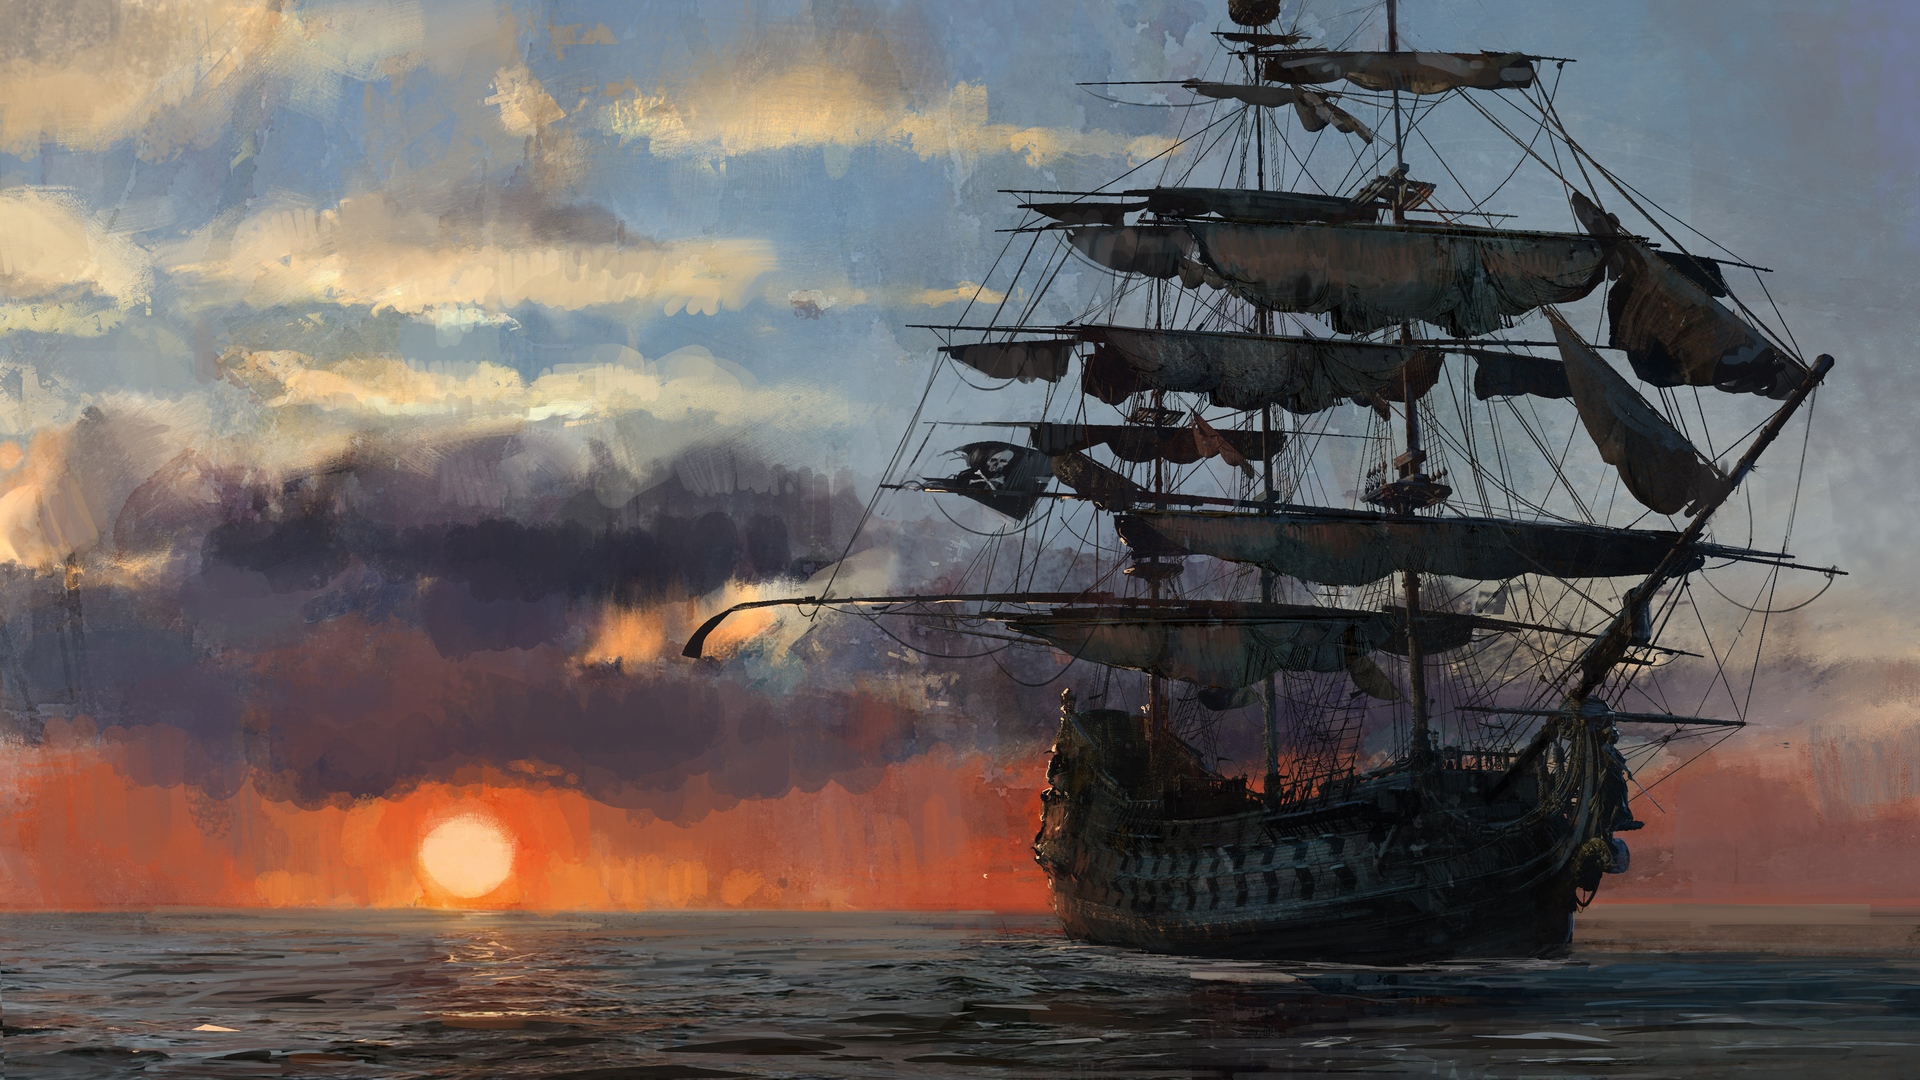 General 1920x1080 video games Skull & Bones (game) sea sunlight clouds Pirate ship